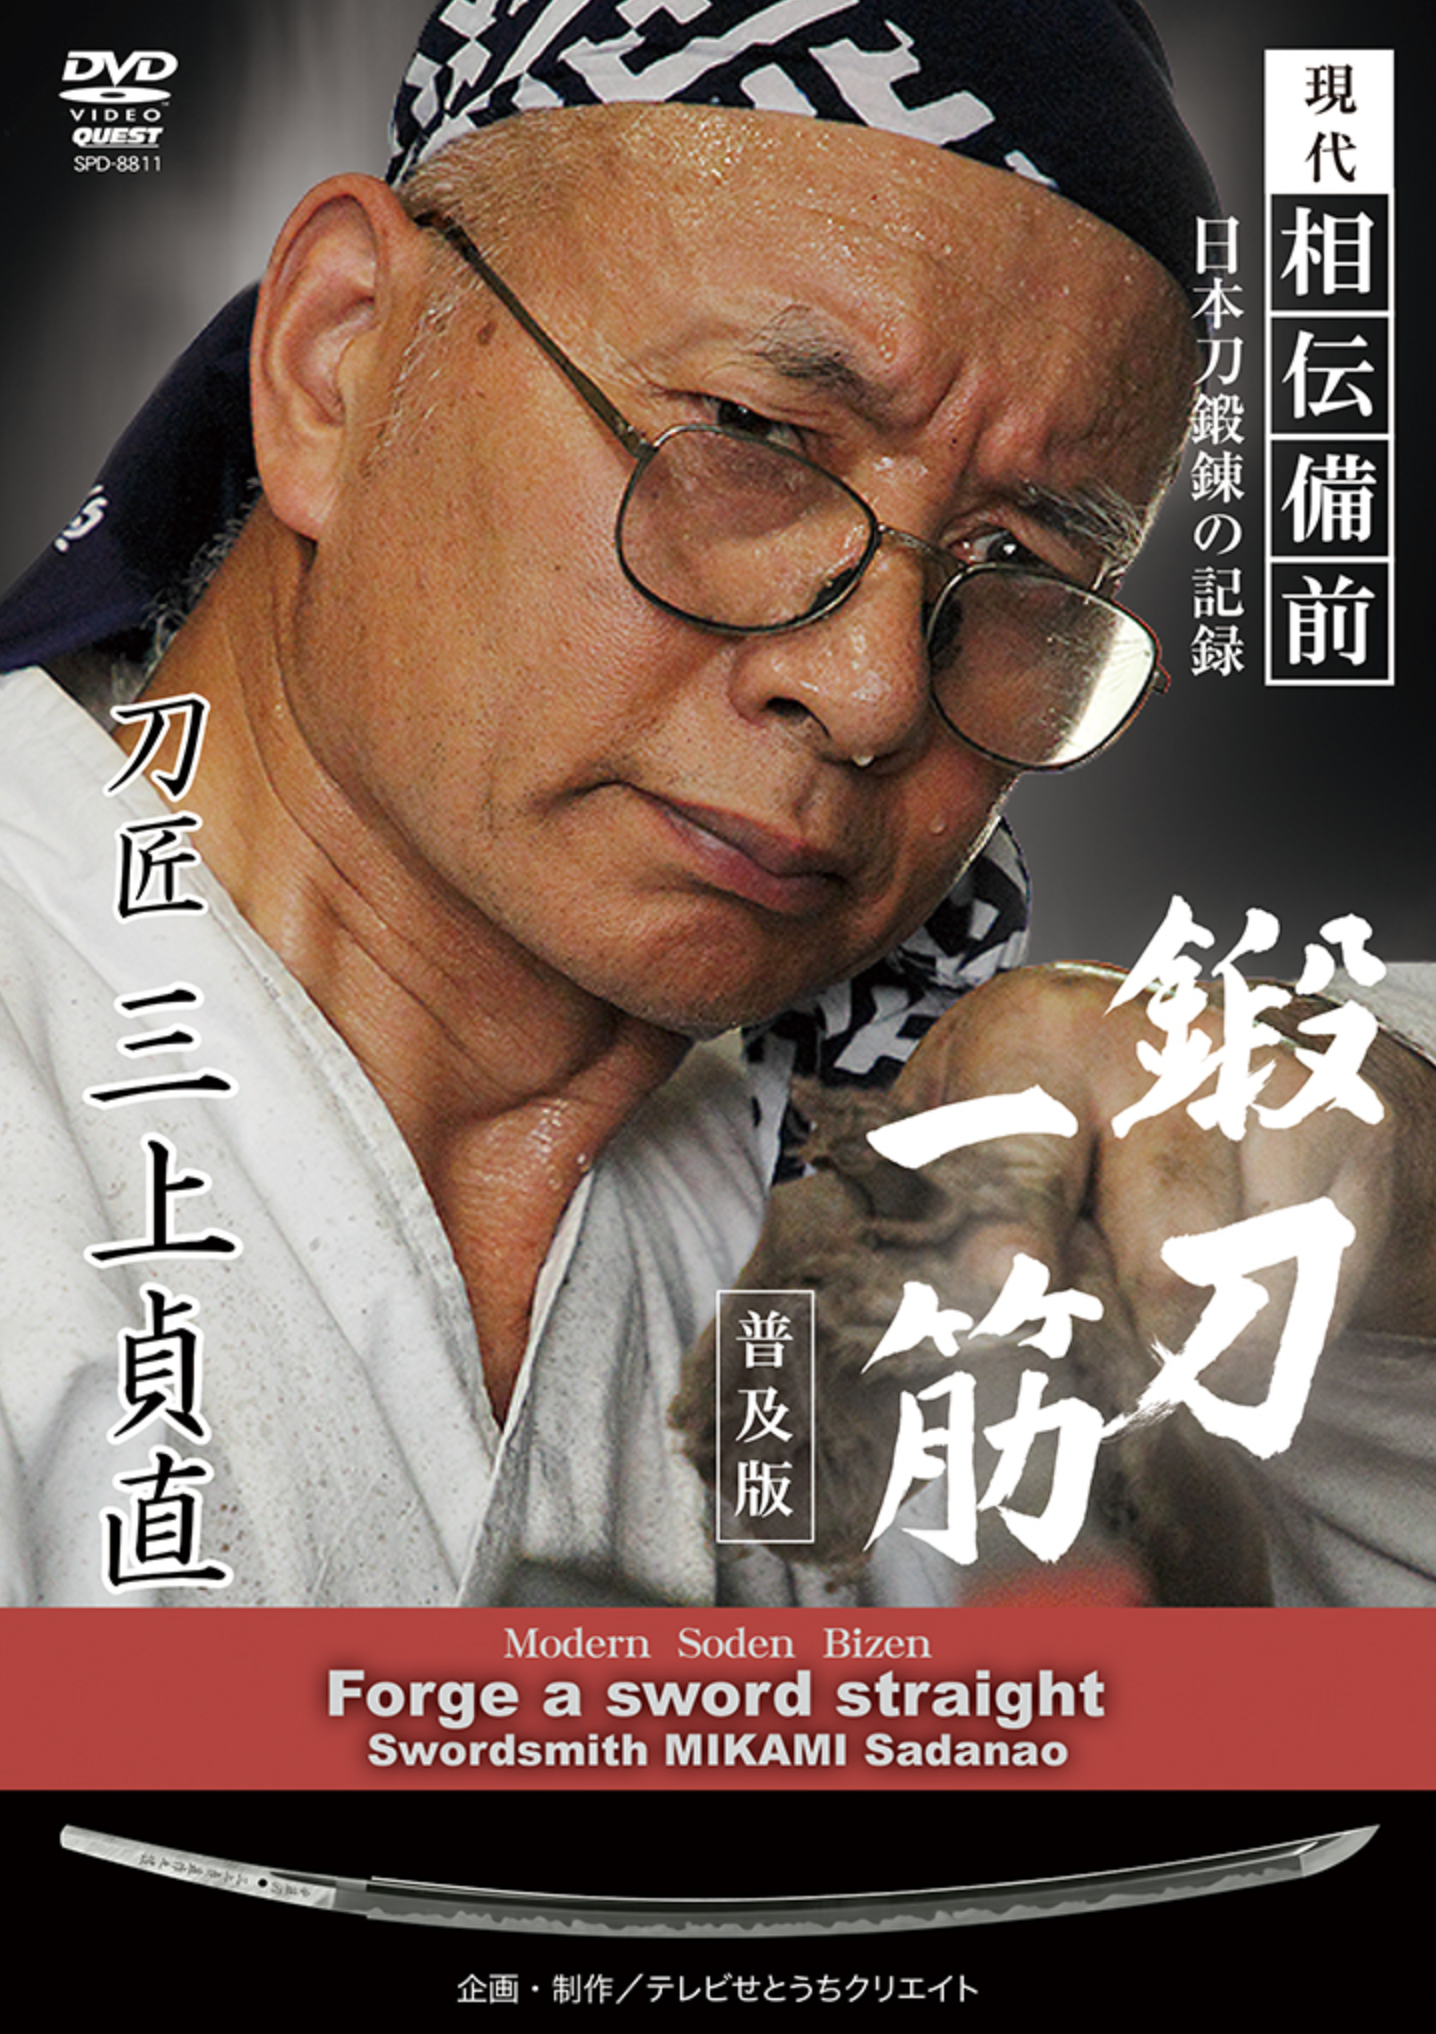 Forge a Sword Straight DVD by Sadanao Mikami - Budovideos Inc